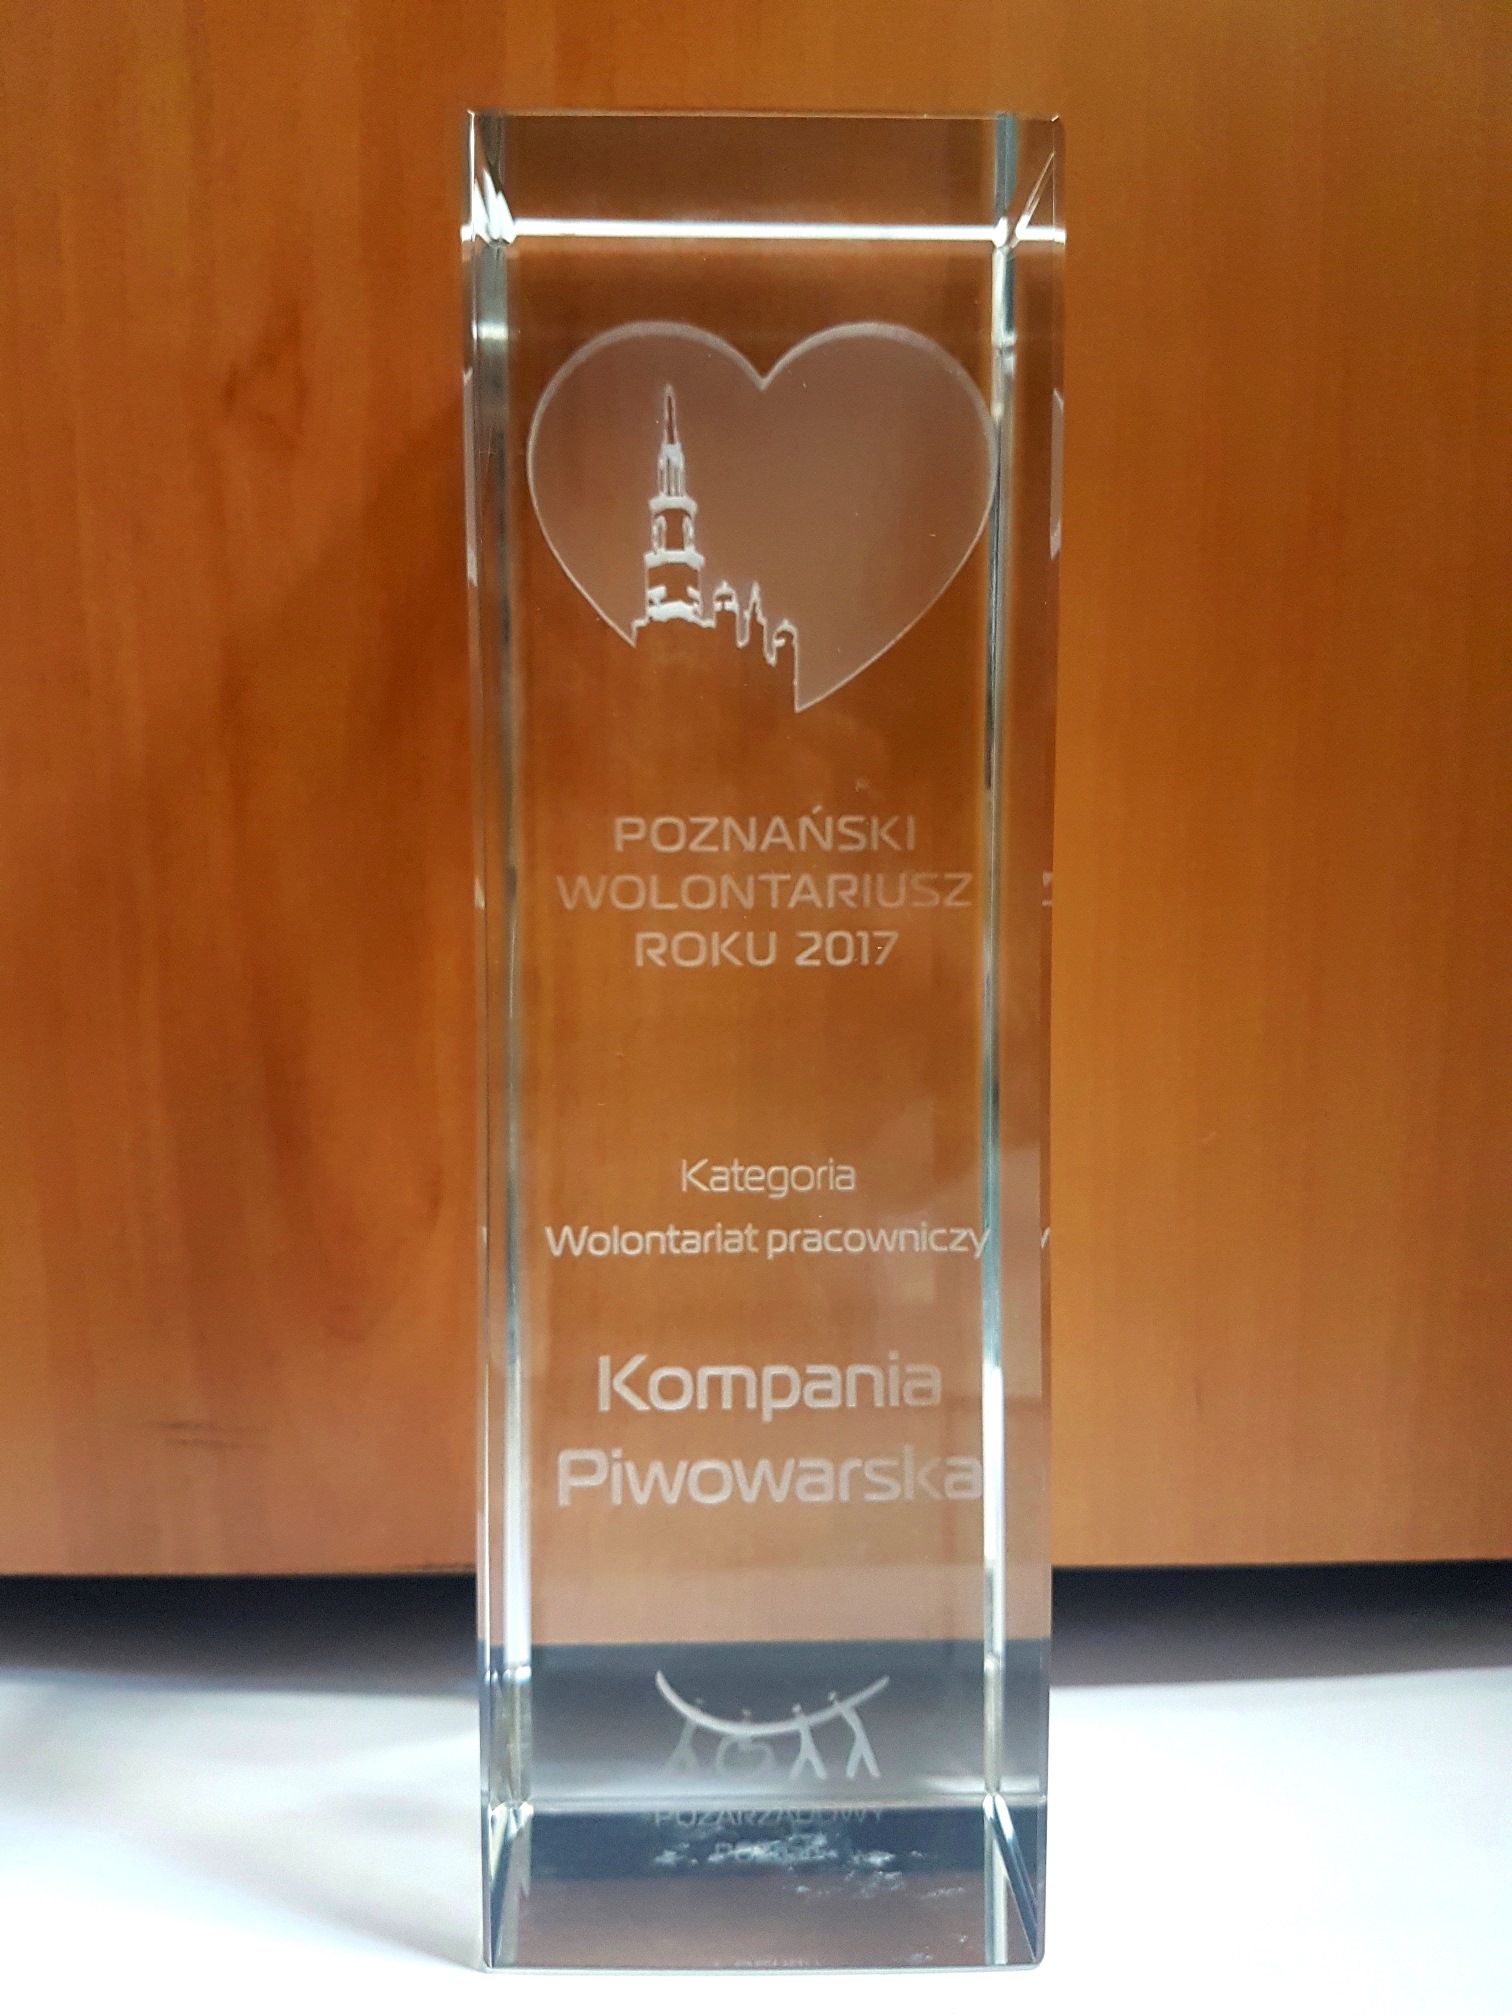 Kompania Piwowarska nagrodzona za strategię CSR i wolontariat pracowniczy